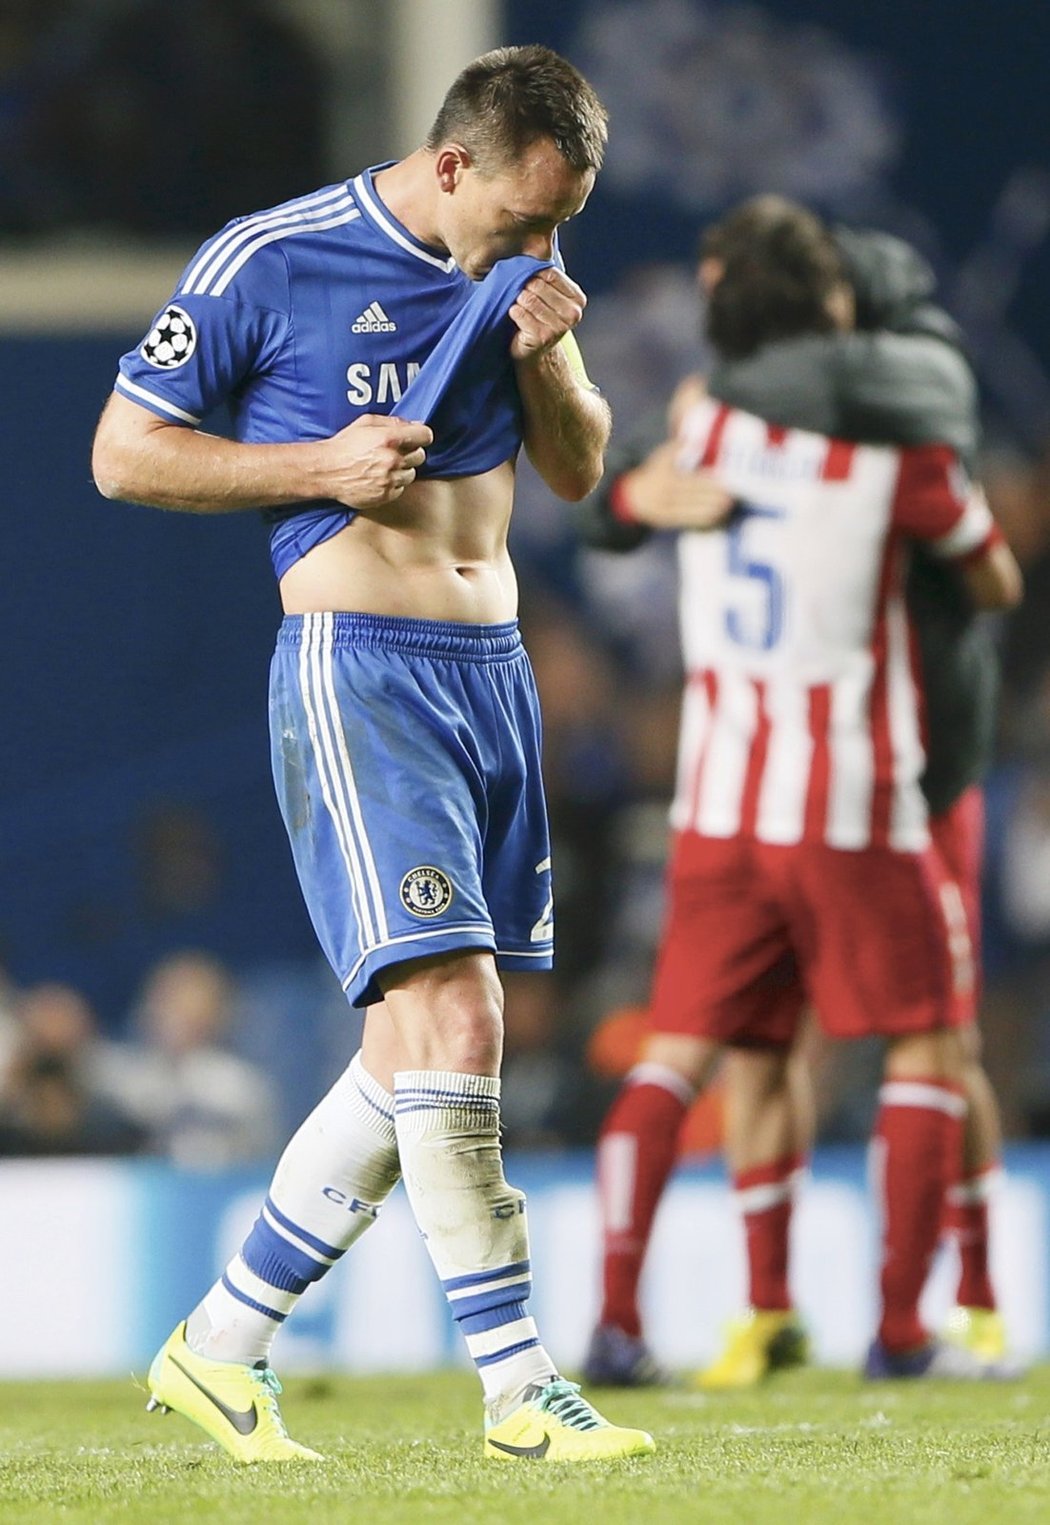 Zklamaný kapitán Chelsea Johny Terry. Atlético nasázelo jeho týmu tři branky a postoupilo do finále Ligy mistrů